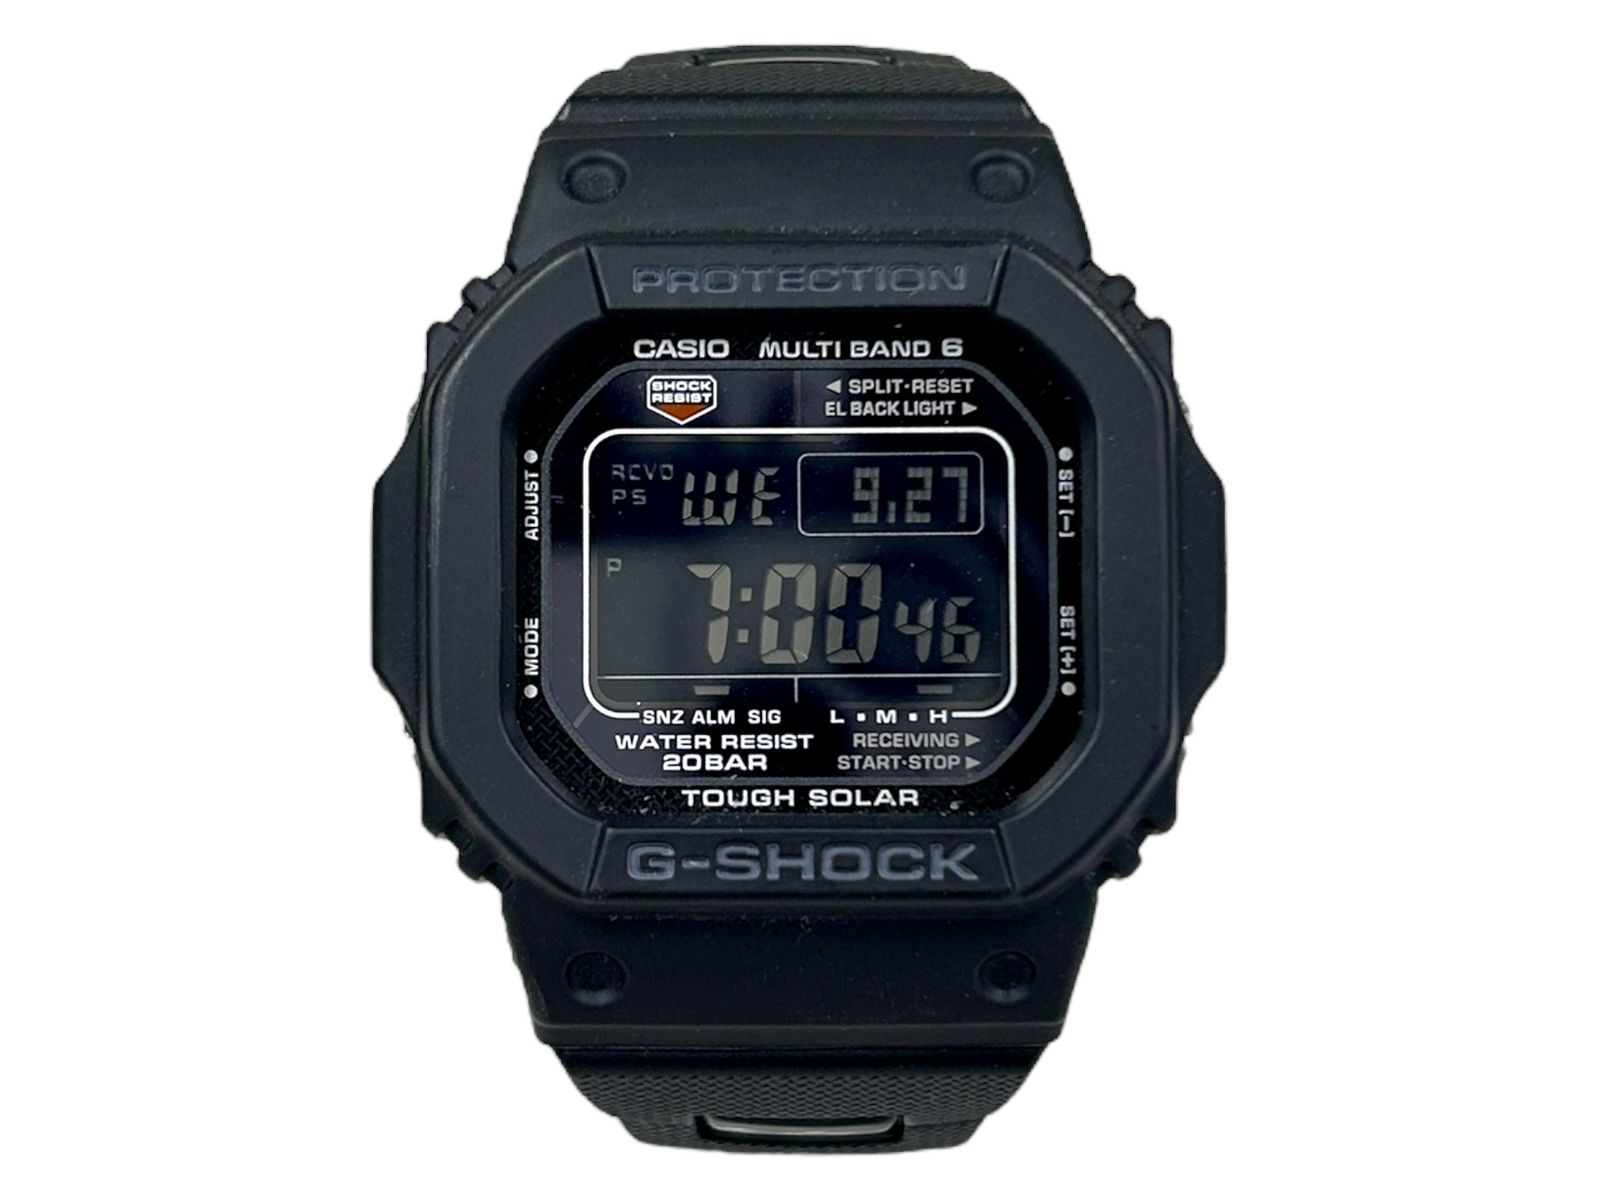 CASIO (カシオ) G-SHOCK Gショック デジタル腕時計 電波ソーラー